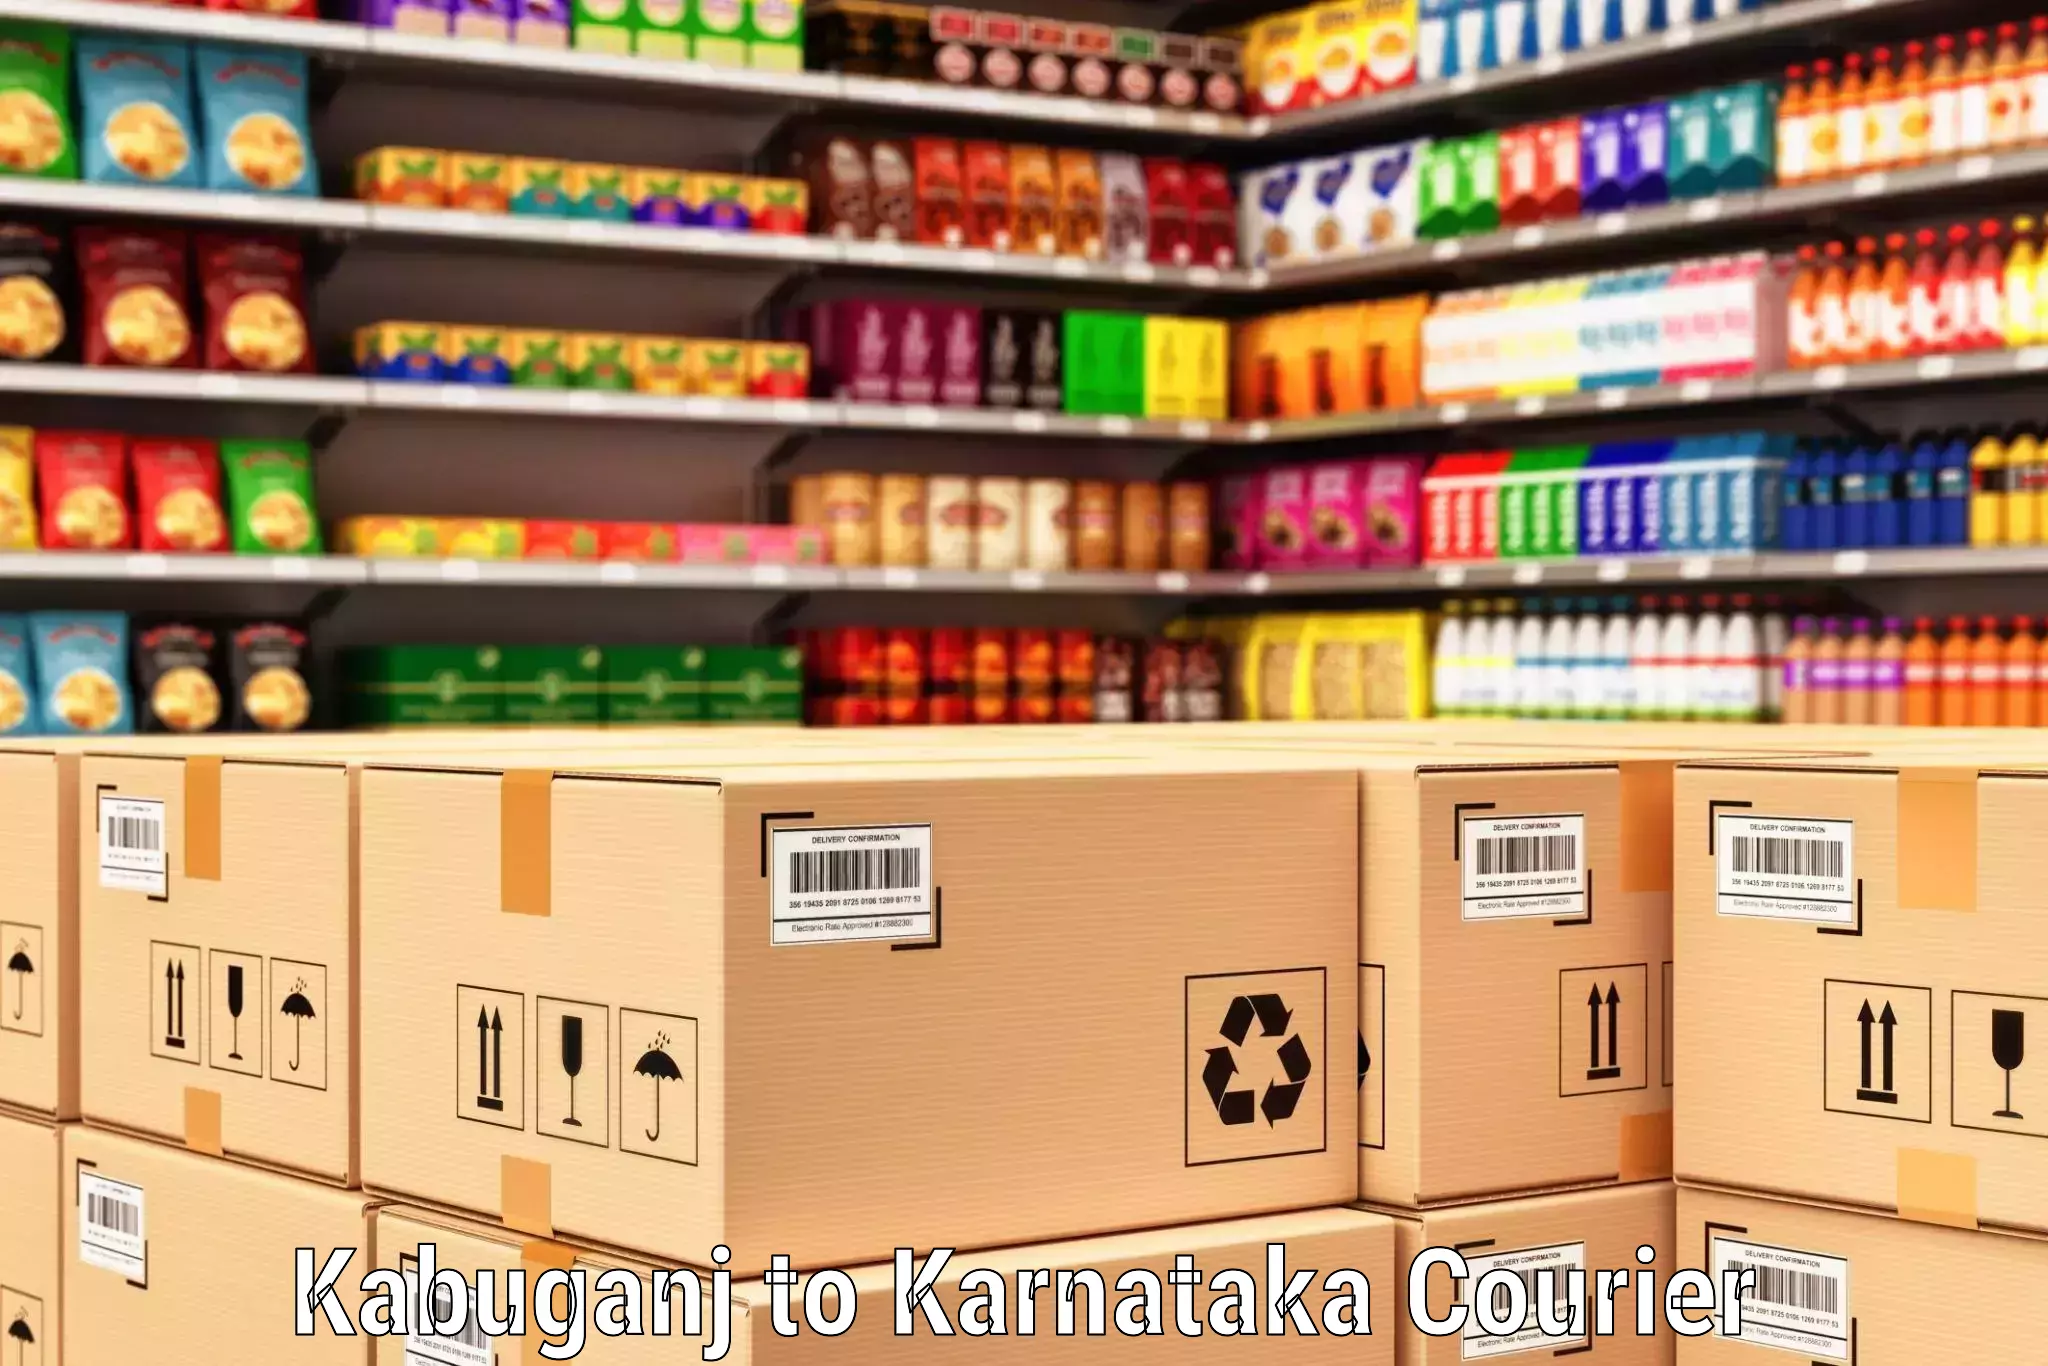 Business delivery service Kabuganj to Yenepoya Mangalore